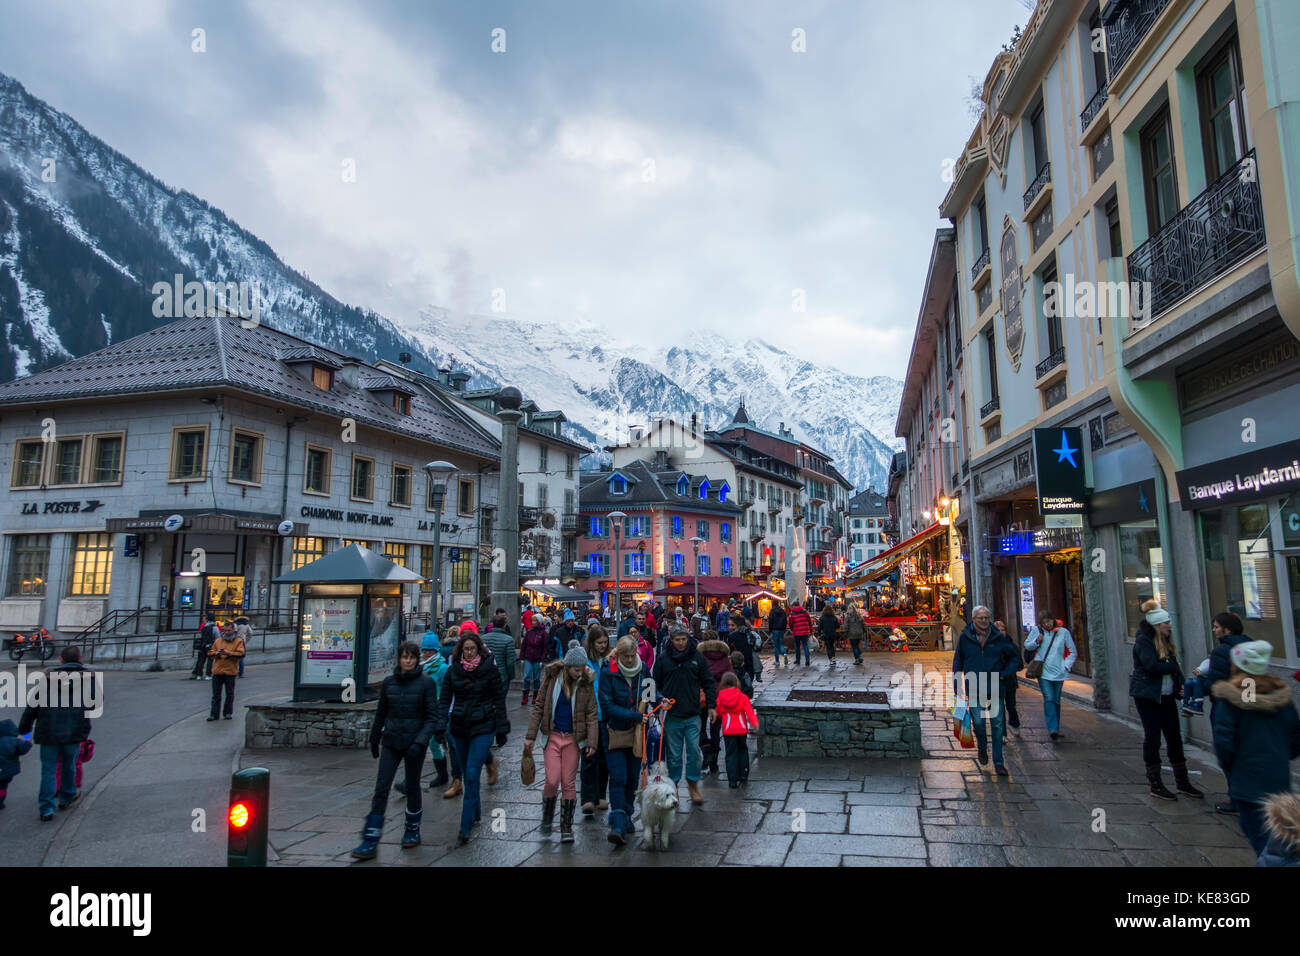 Touristen auf den Straßen neben Geschäften mit Blick auf die Bergkette, Chamonix, Frankreich Stockfoto